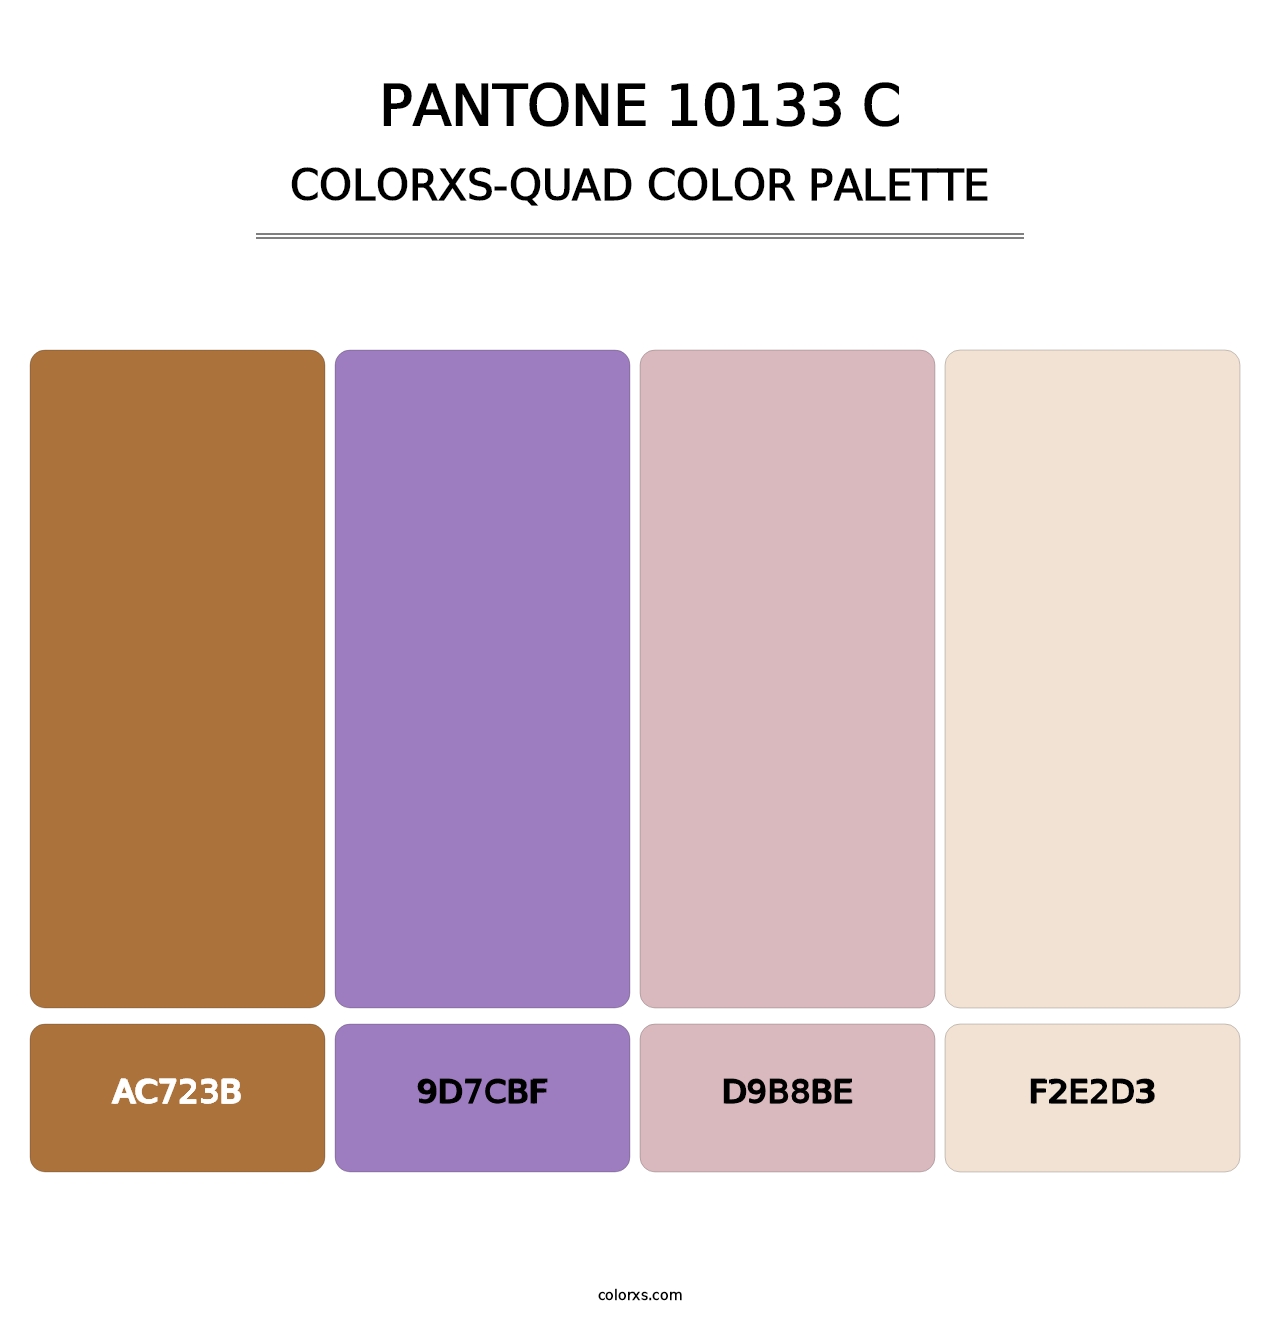 PANTONE 10133 C - Colorxs Quad Palette